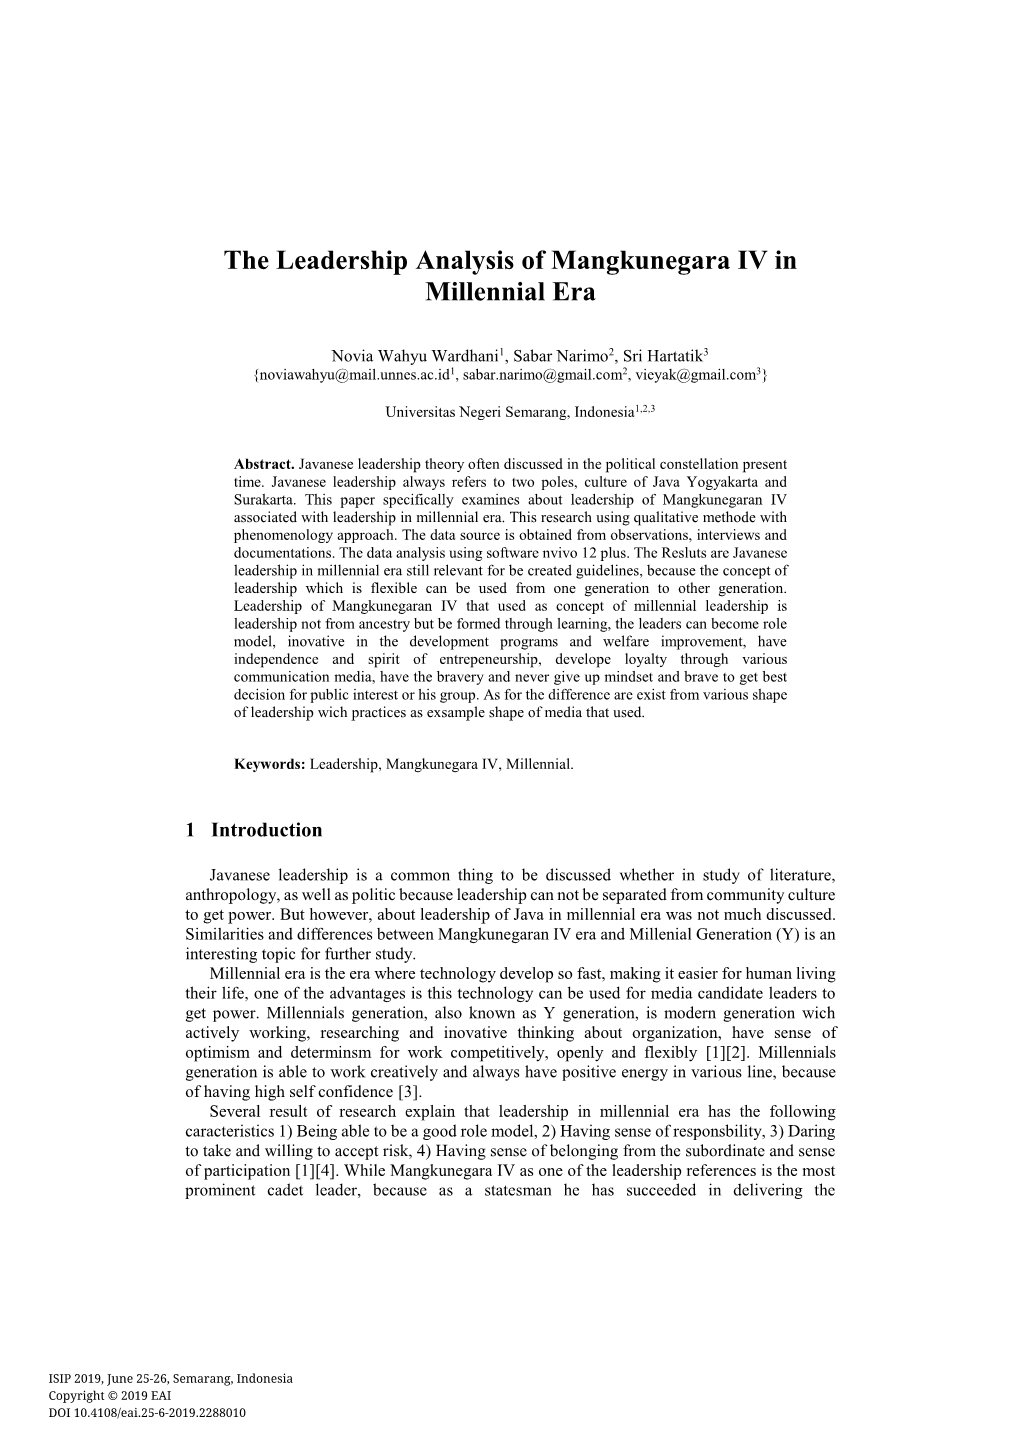 The Leadership Analysis of Mangkunegara IV in Millennial Era